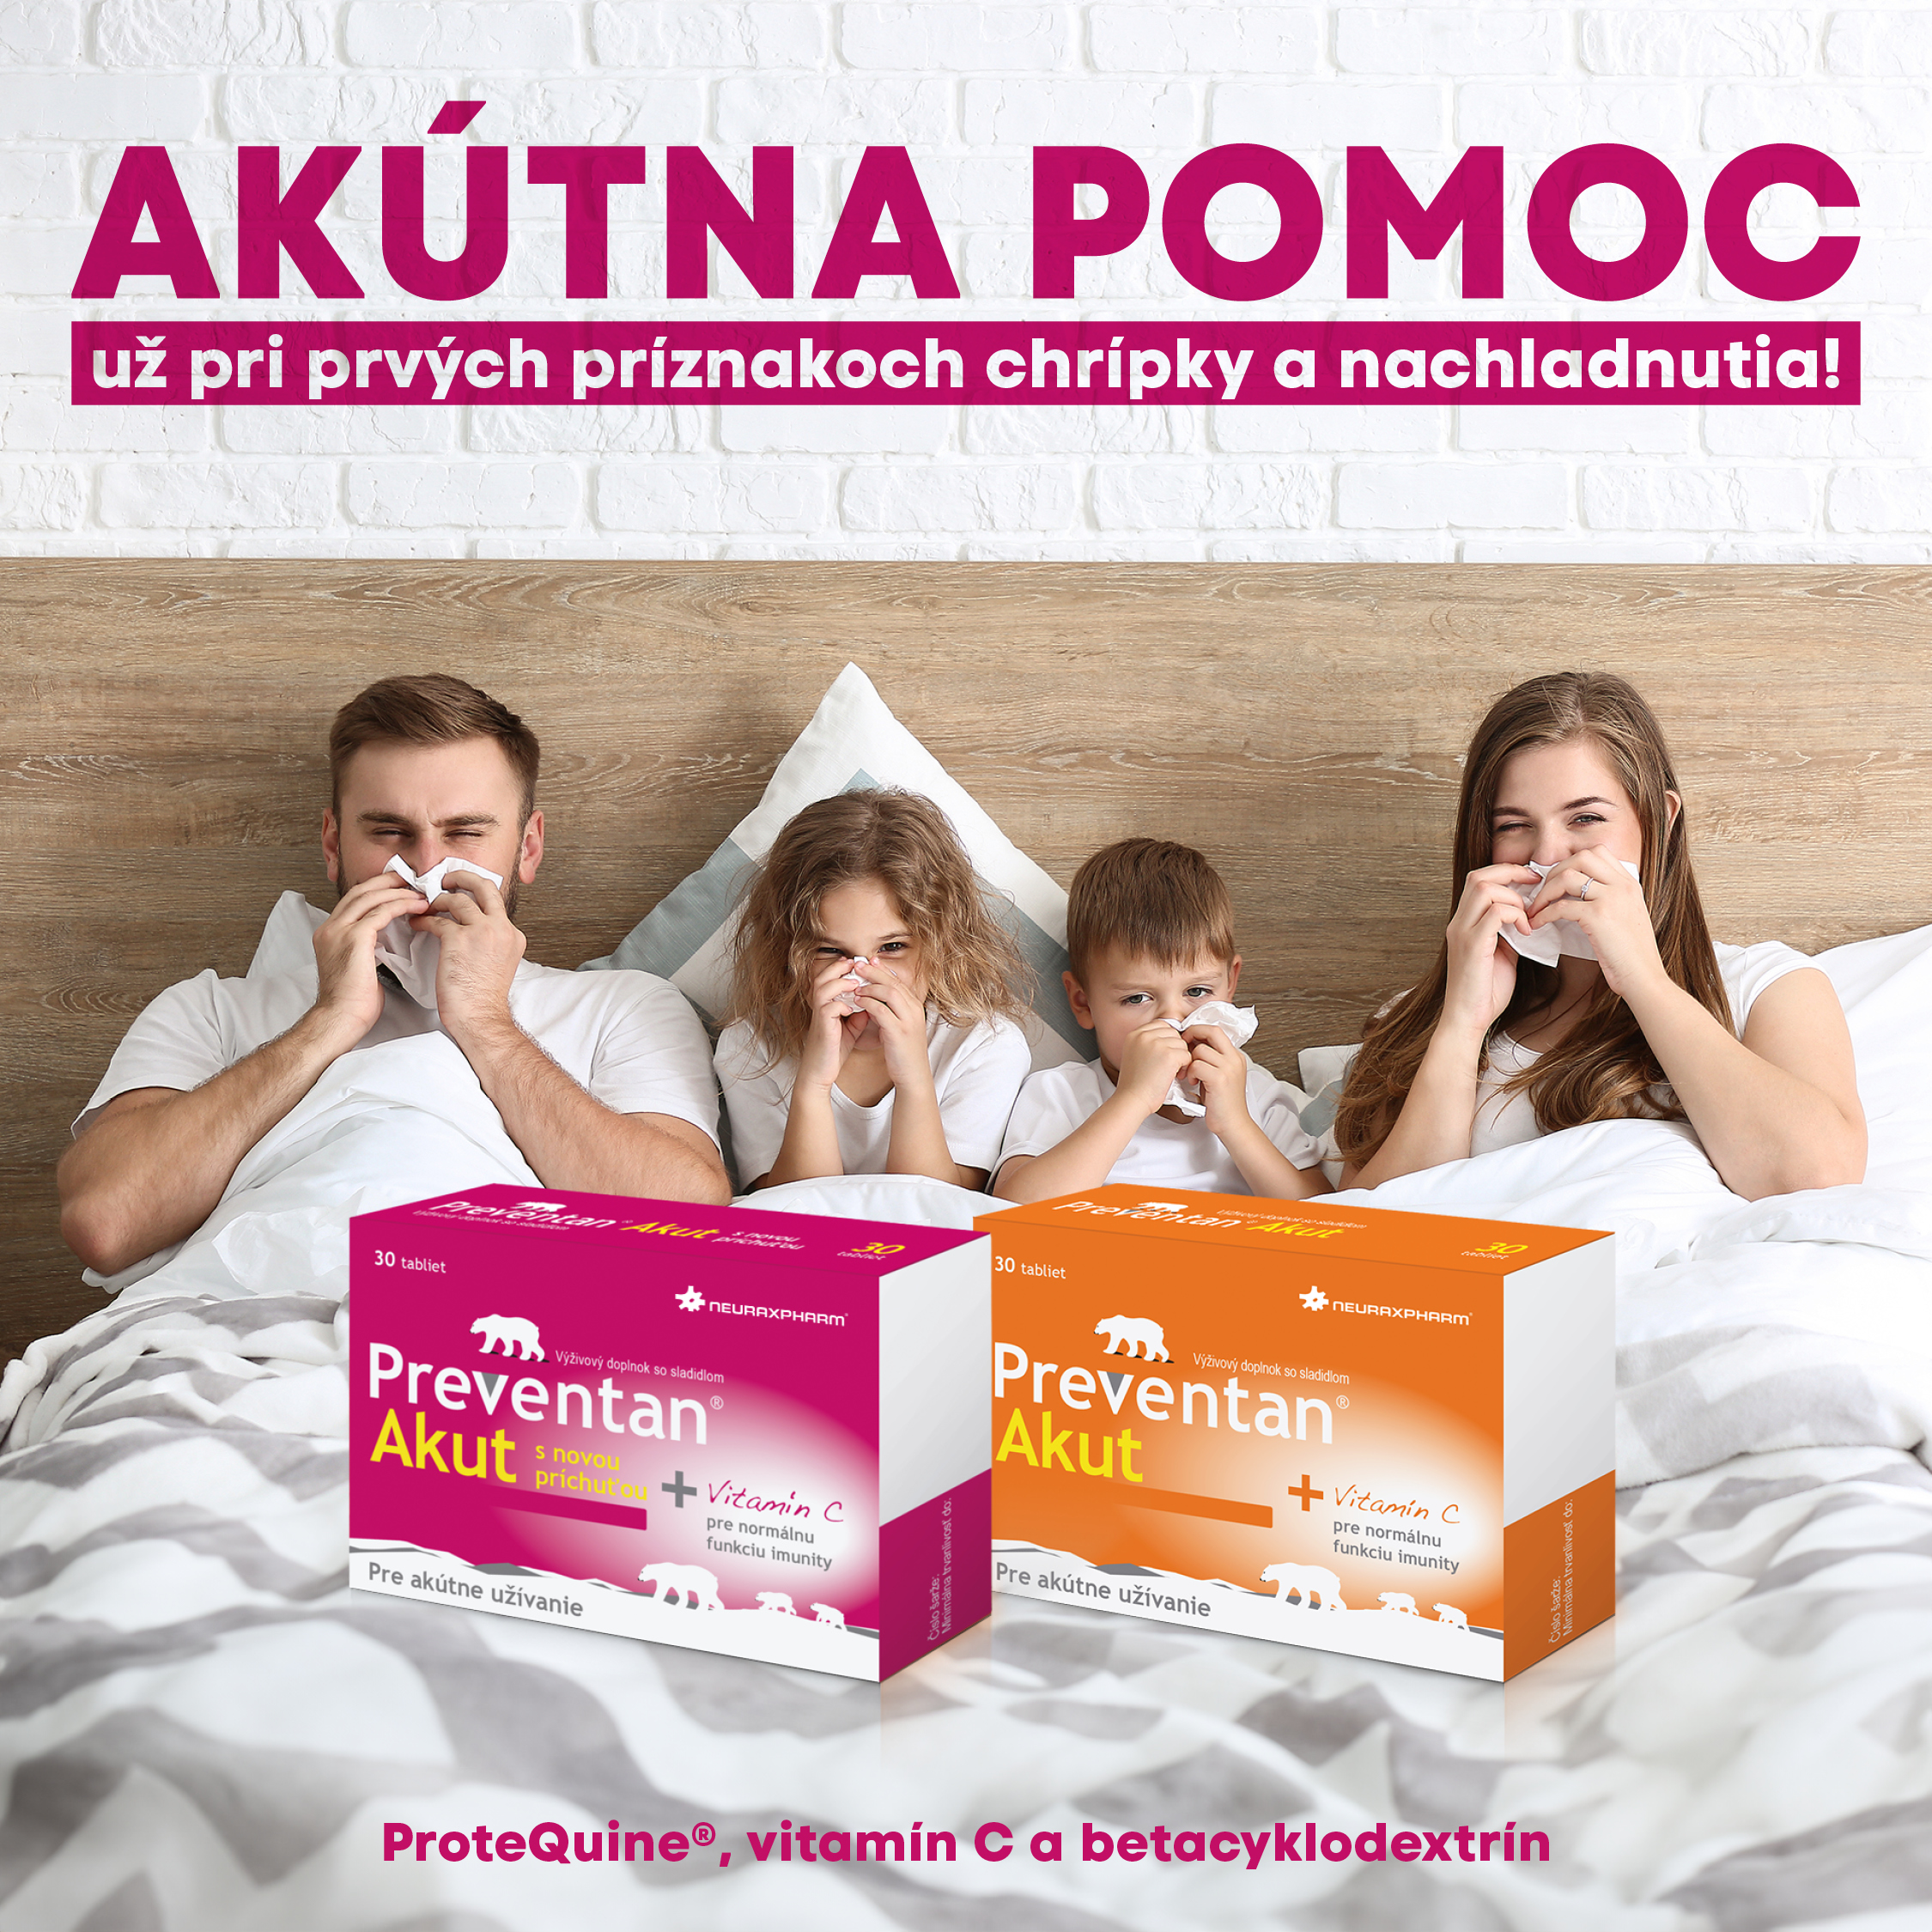 Preventan® Akut – akútna pomoc pri chrípke a prechladnutí